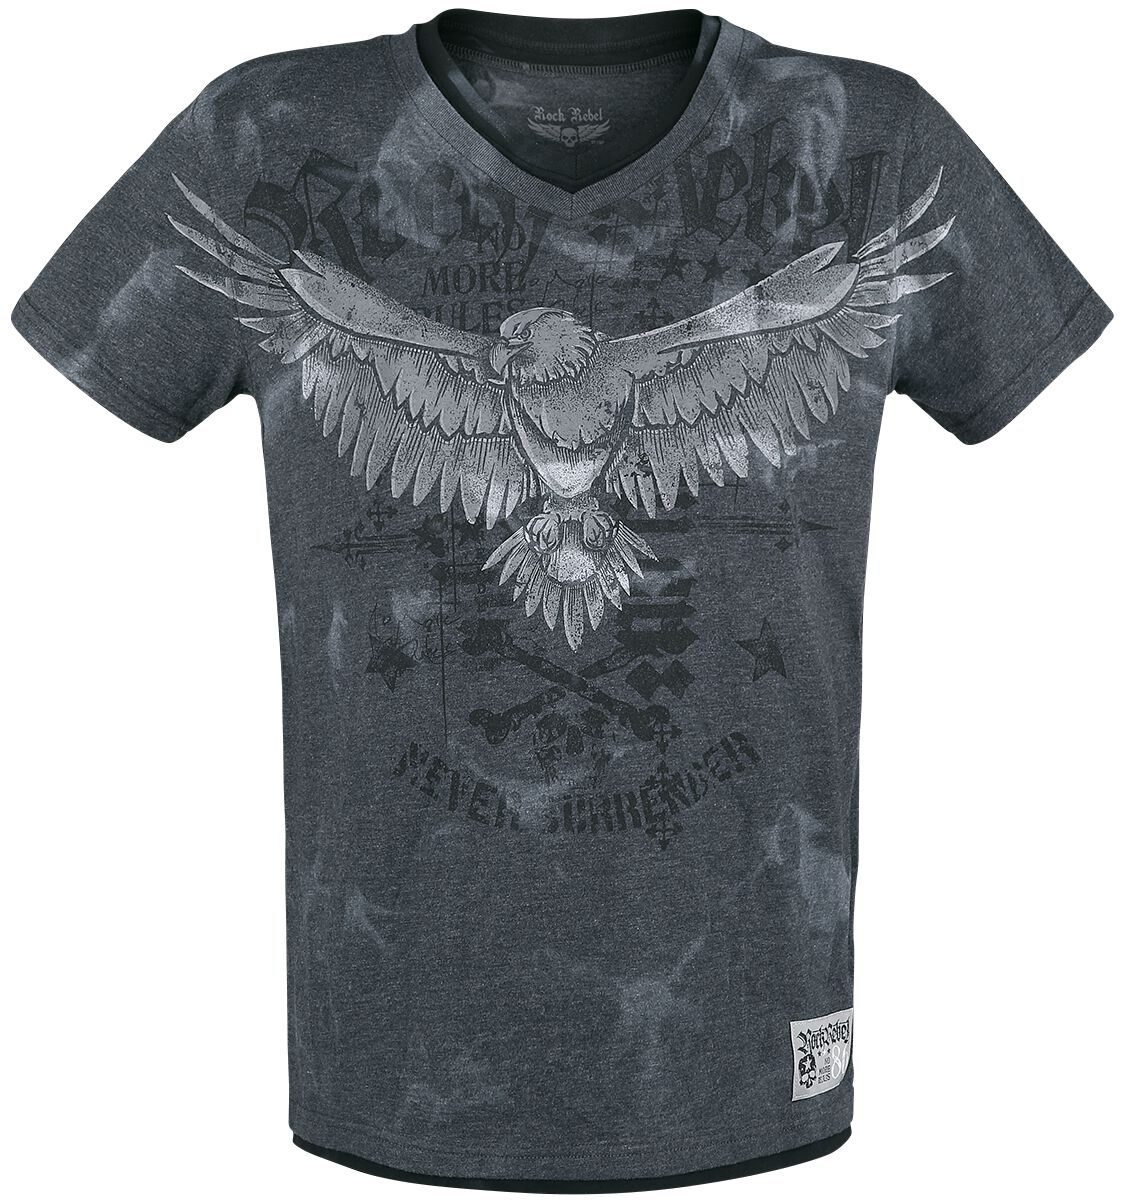 Rock Rebel by EMP - Rock T-Shirt - T-Shirt mit Print und V-Ausschnitt - S bis XXL - für Männer - Größe M - grau